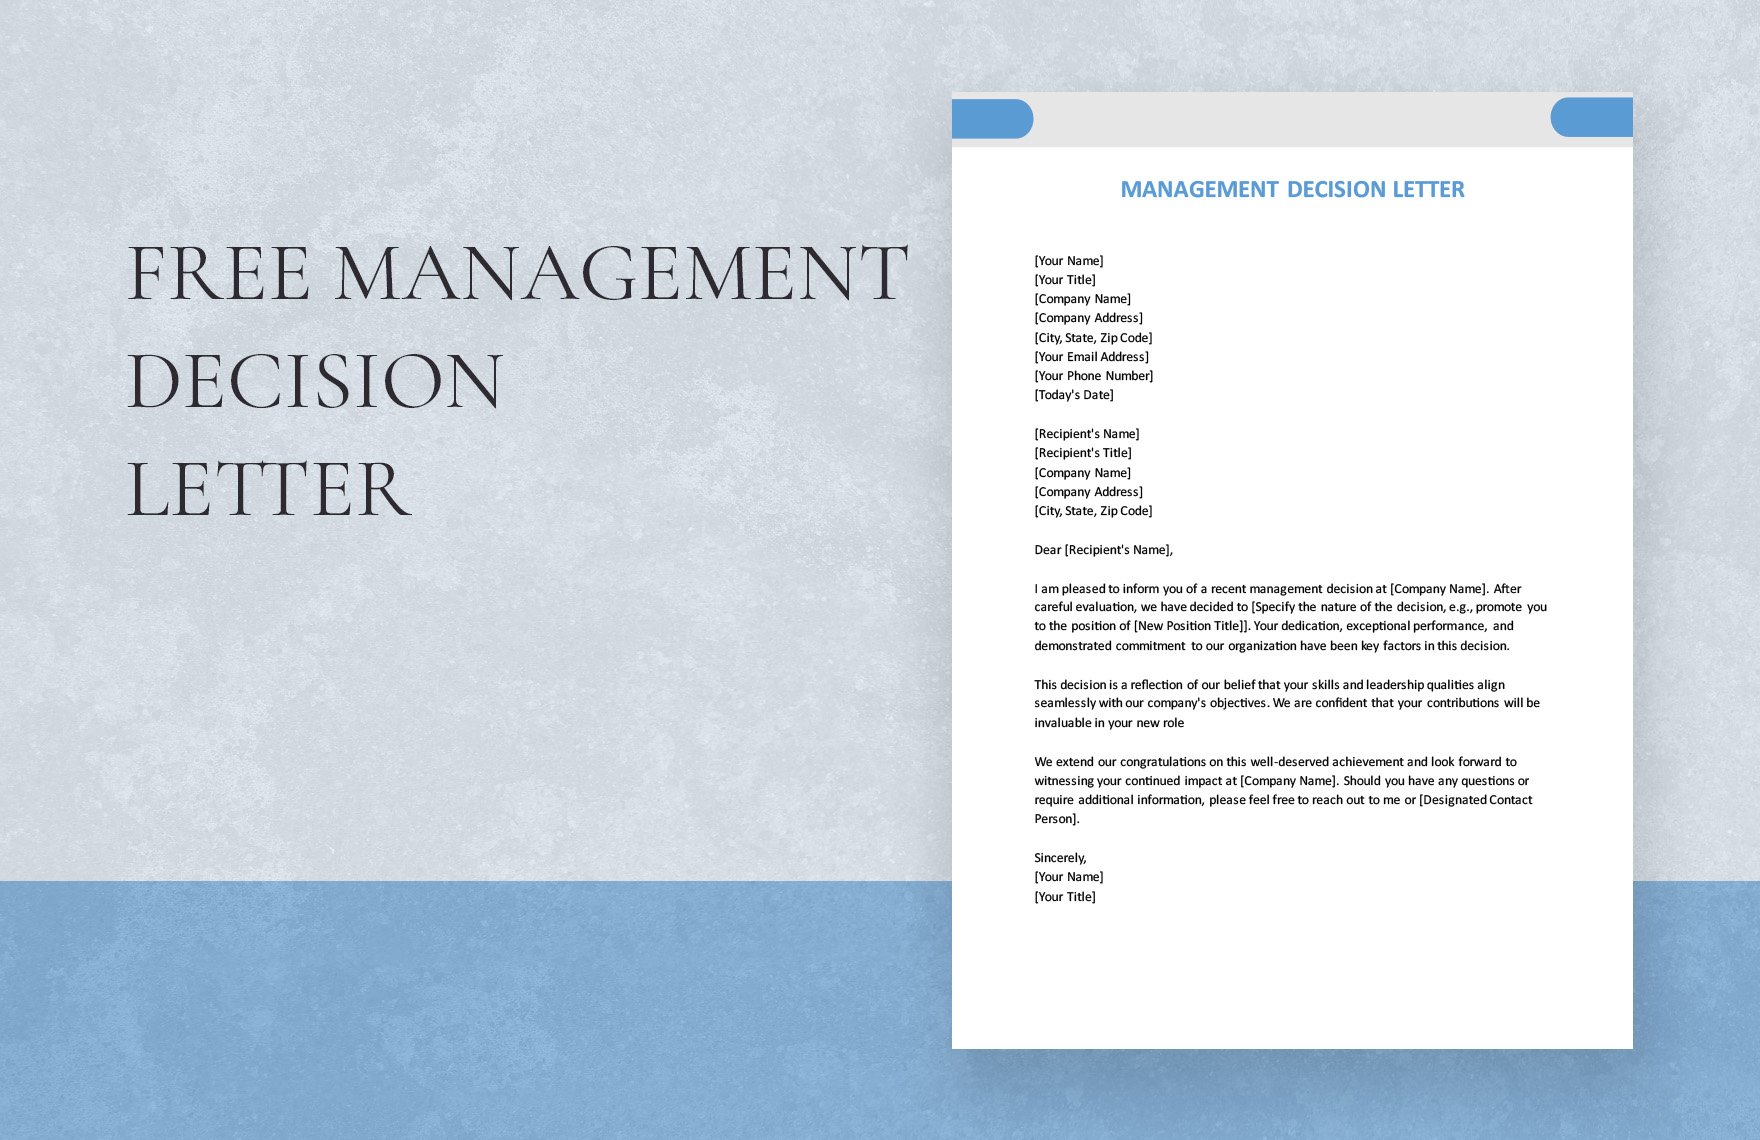 Management Decision Letter